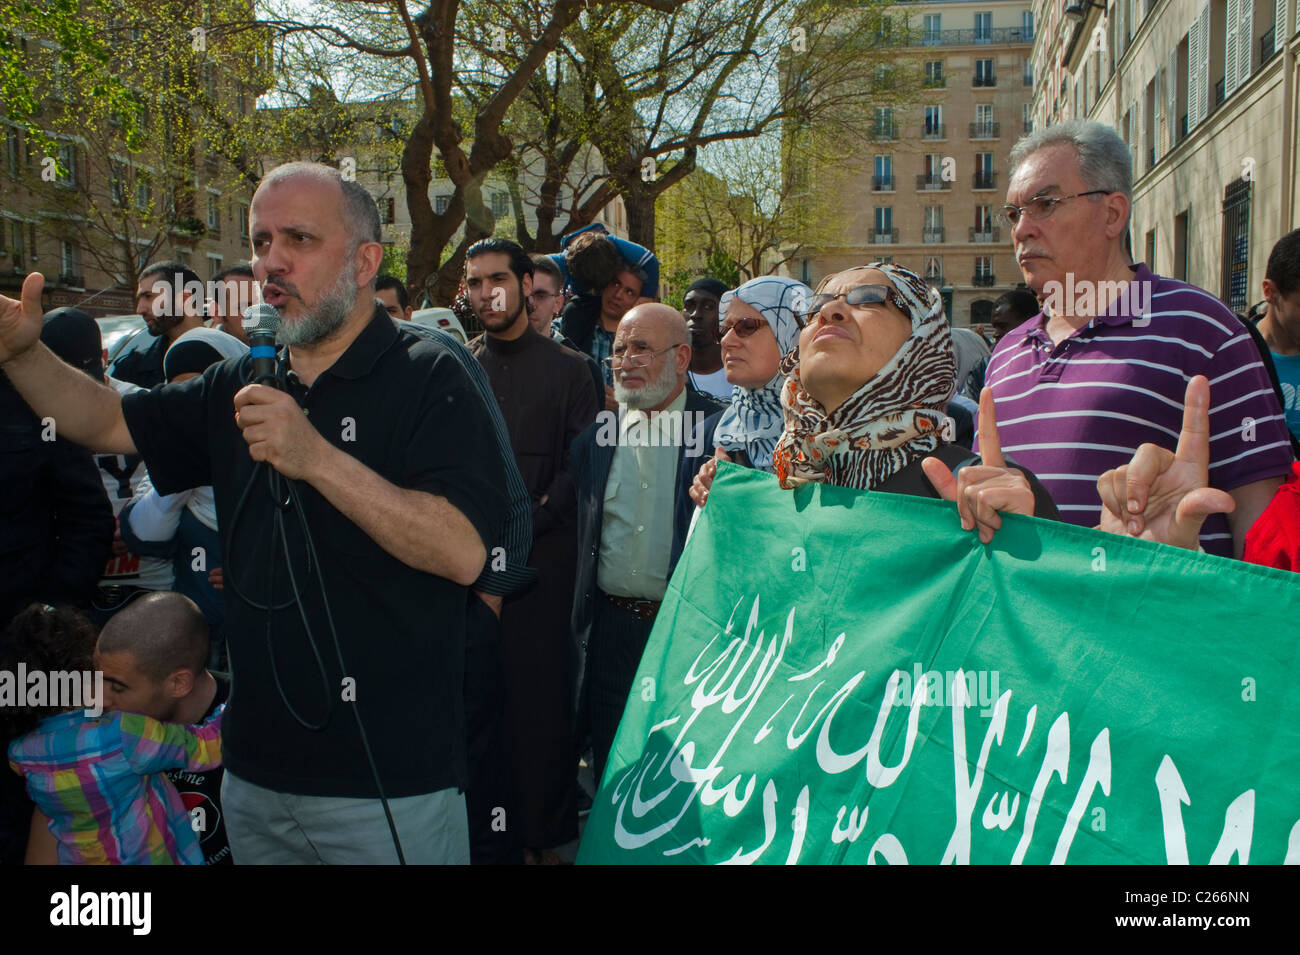 Paris, France, musulmans manifestant contre l'islamophobie, homme qui parle à la foule dans la rue, Abdelhakim Sefrioui, leader radical de l'Islam qui s'adresse à la foule, rencontre religieuse, anti-discrimination, france musulmane Banque D'Images